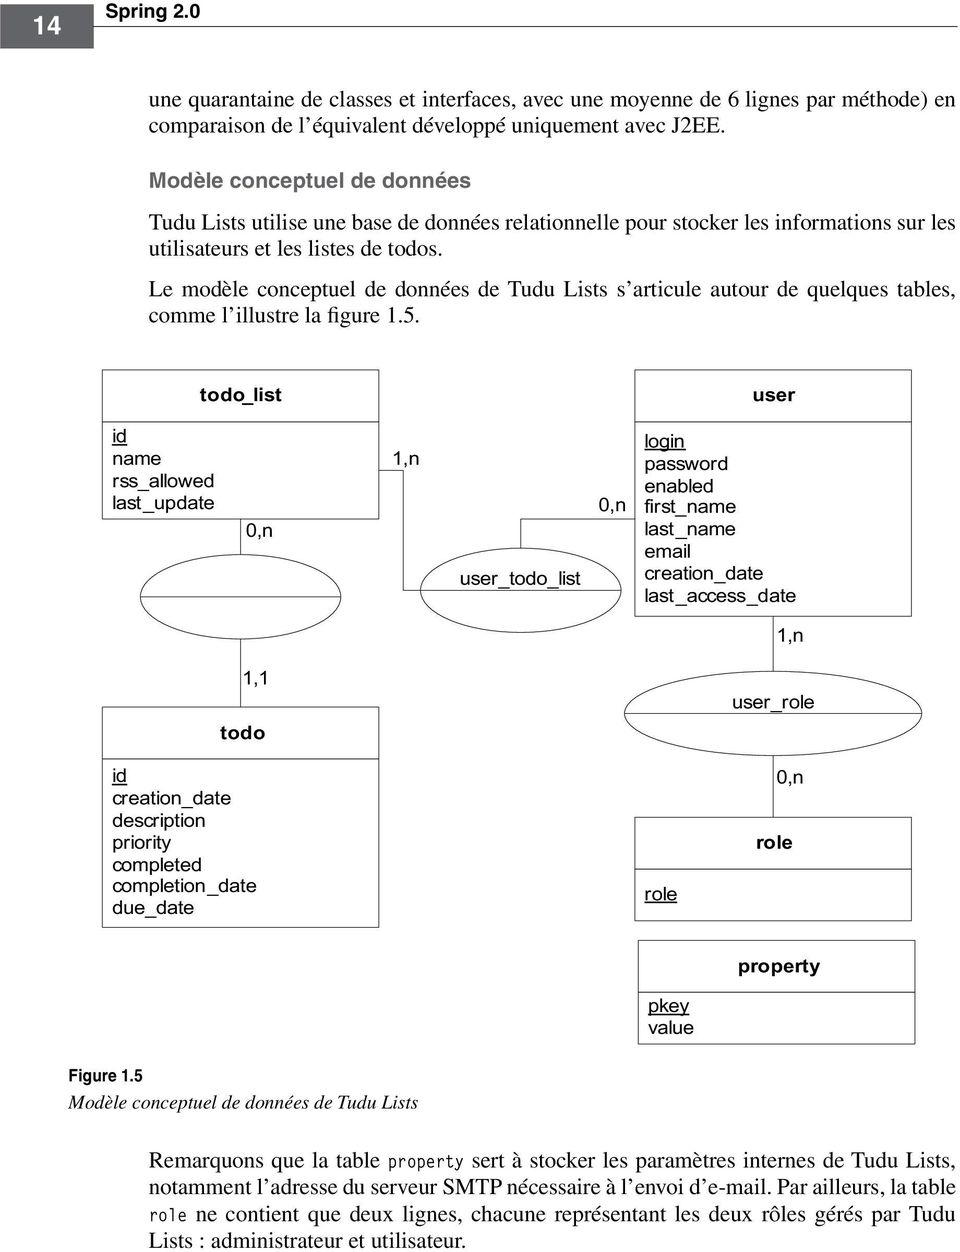 Le modèle conceptuel de données de Tudu Lists s articule autour de quelques tables, comme l illustre la figure 1.5.